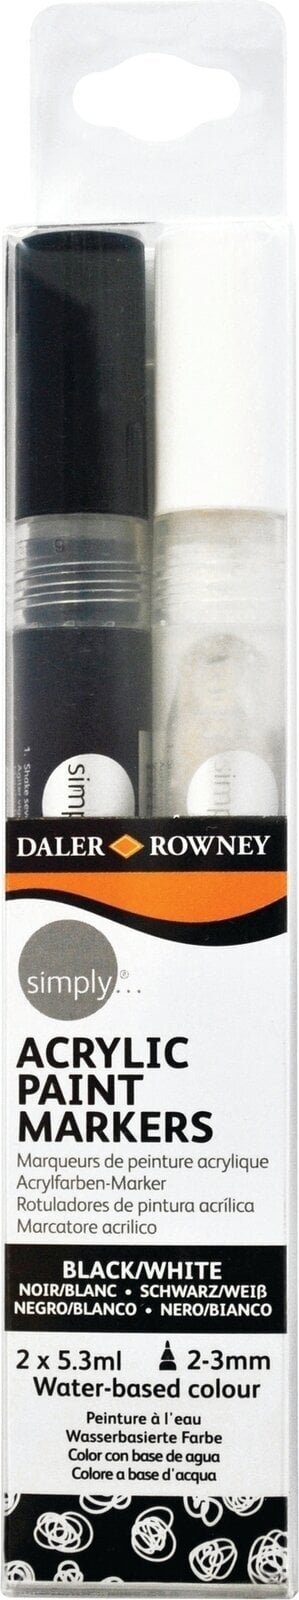 Pixur cu pâslă Daler Rowney Simply Acrylic Marker Set de markere acrilice Negru/Alb 2 x 5,3 ml